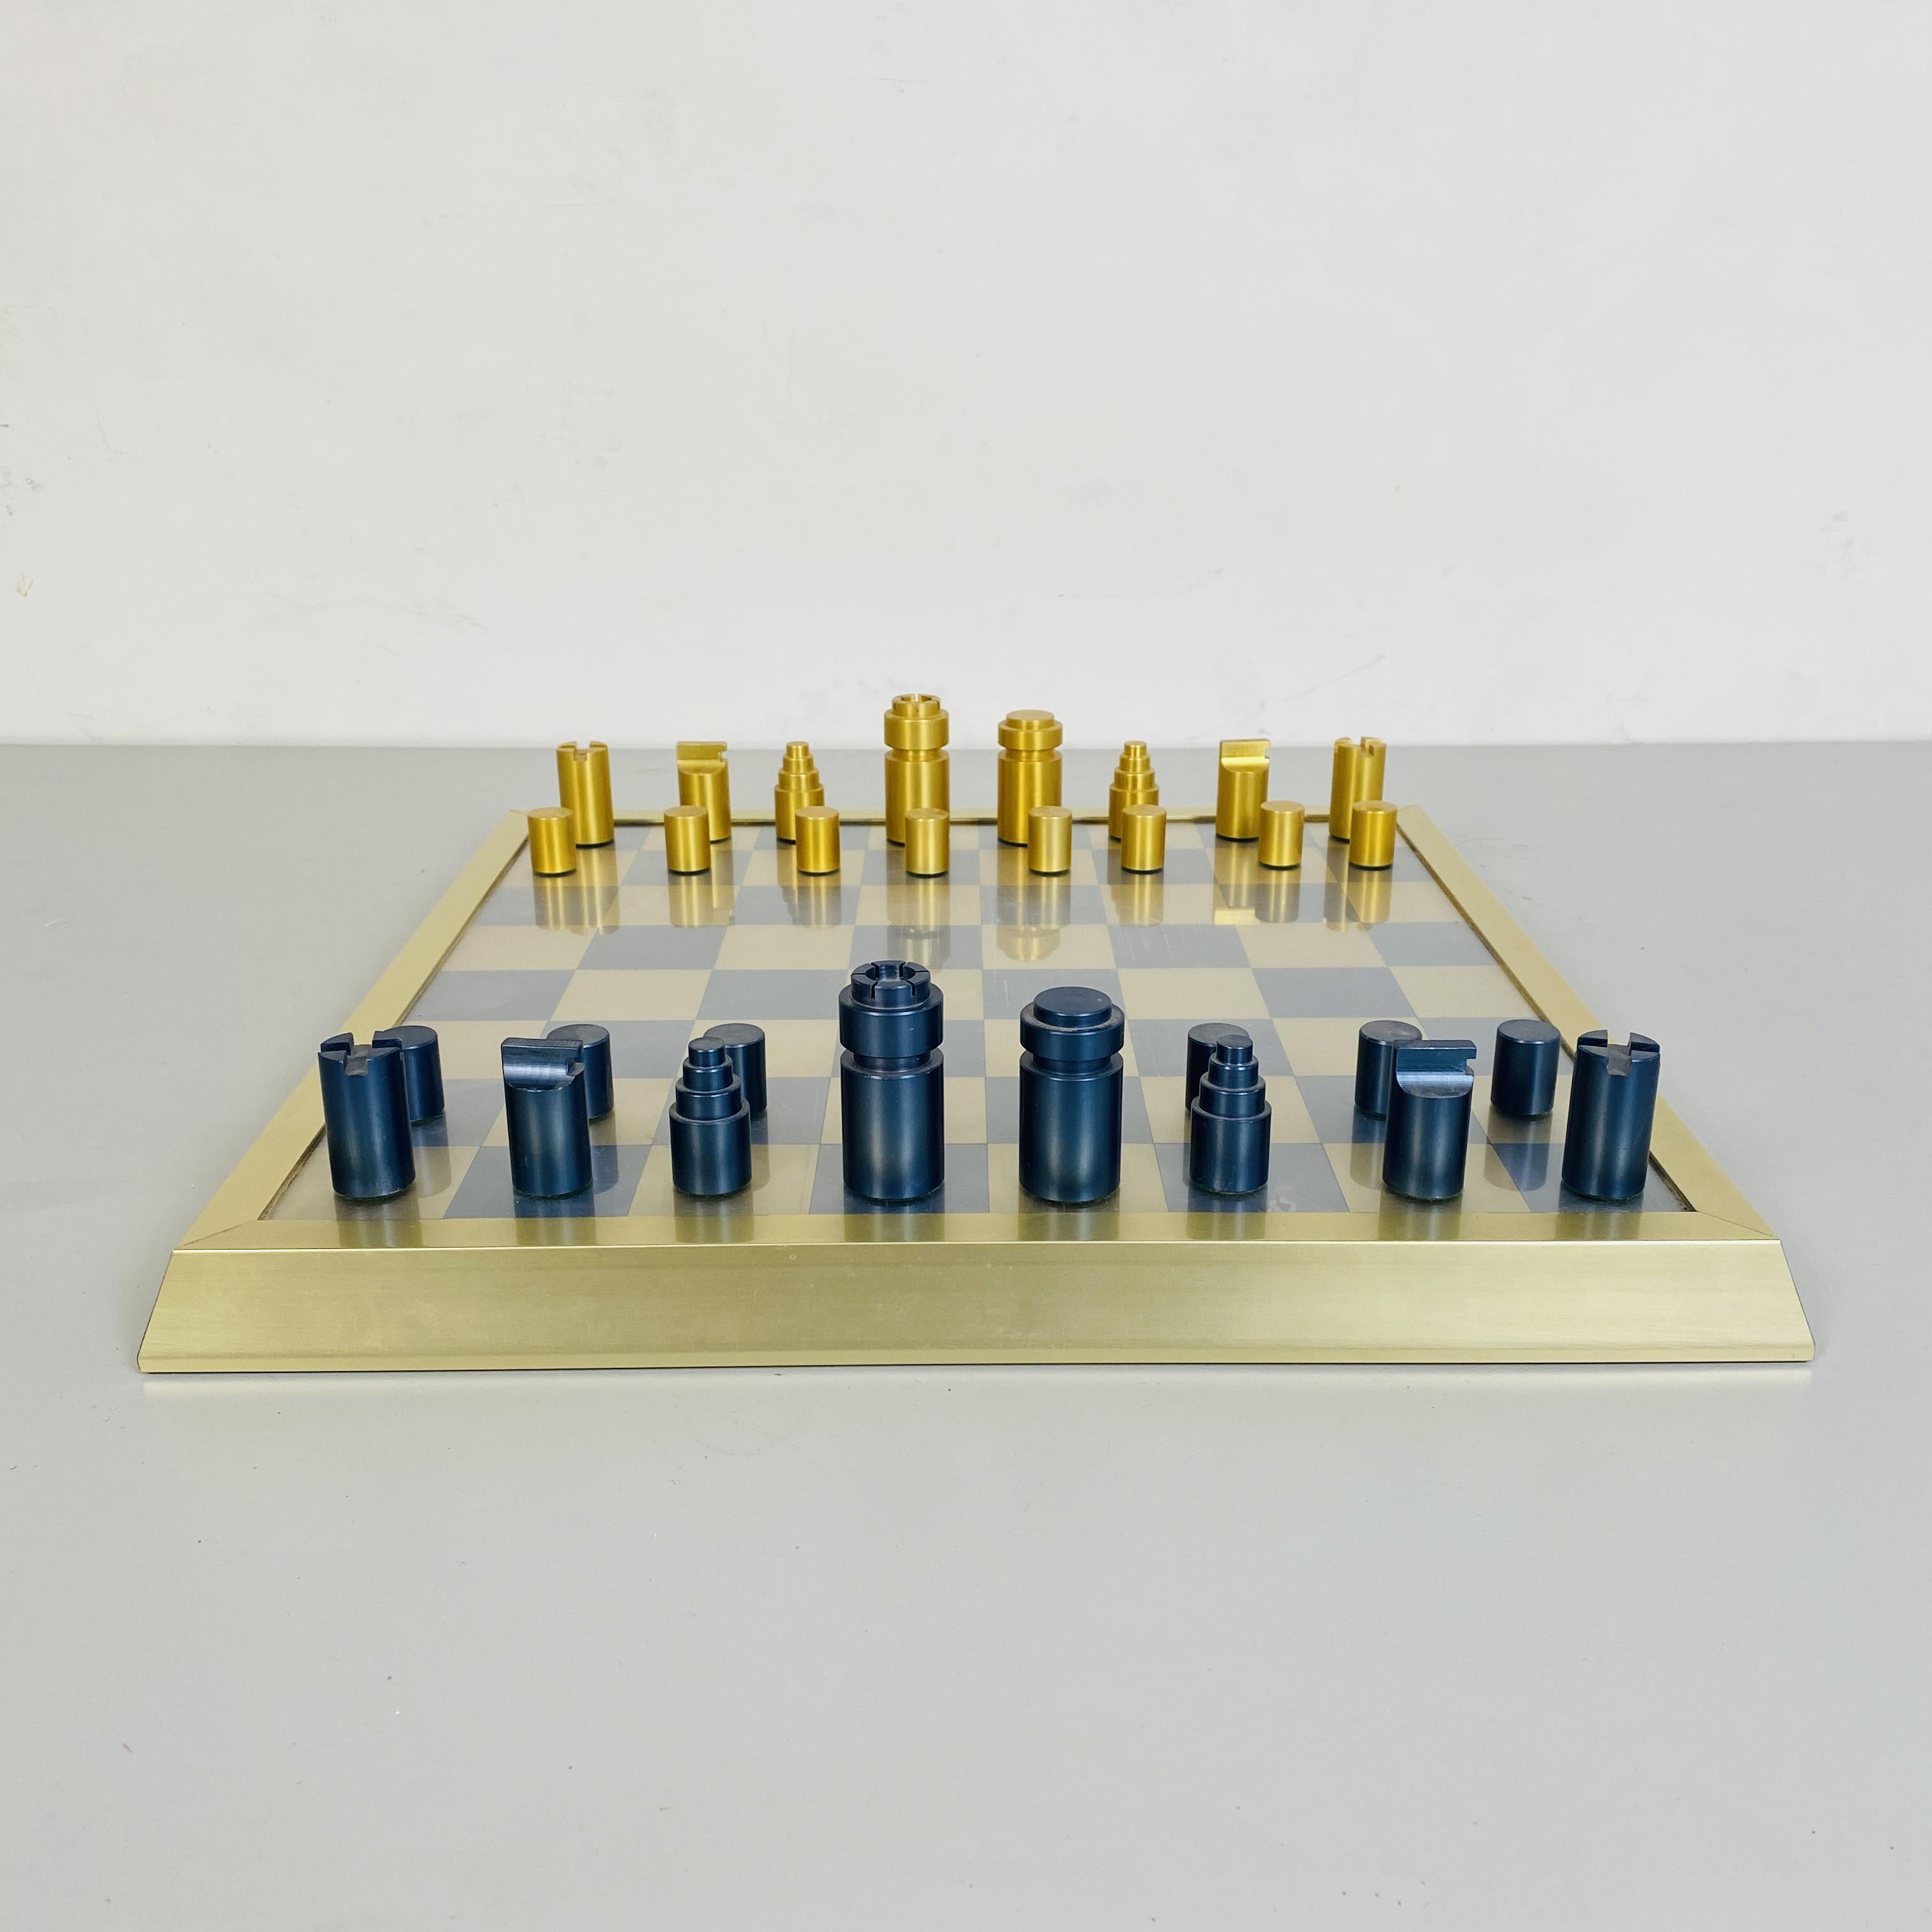 Profi-Schachbrett mit Bauern, 1980er Jahre
Professionelles Schachbrett aus Metall, Holz und Kunststoff. Der Spielplan ist 37,5 x 37,5 cm groß und die Einzelschachtel misst 4,37 x 4,37 cm. Die Stücke sind aus Holz und in Gold und Metallic-Blau